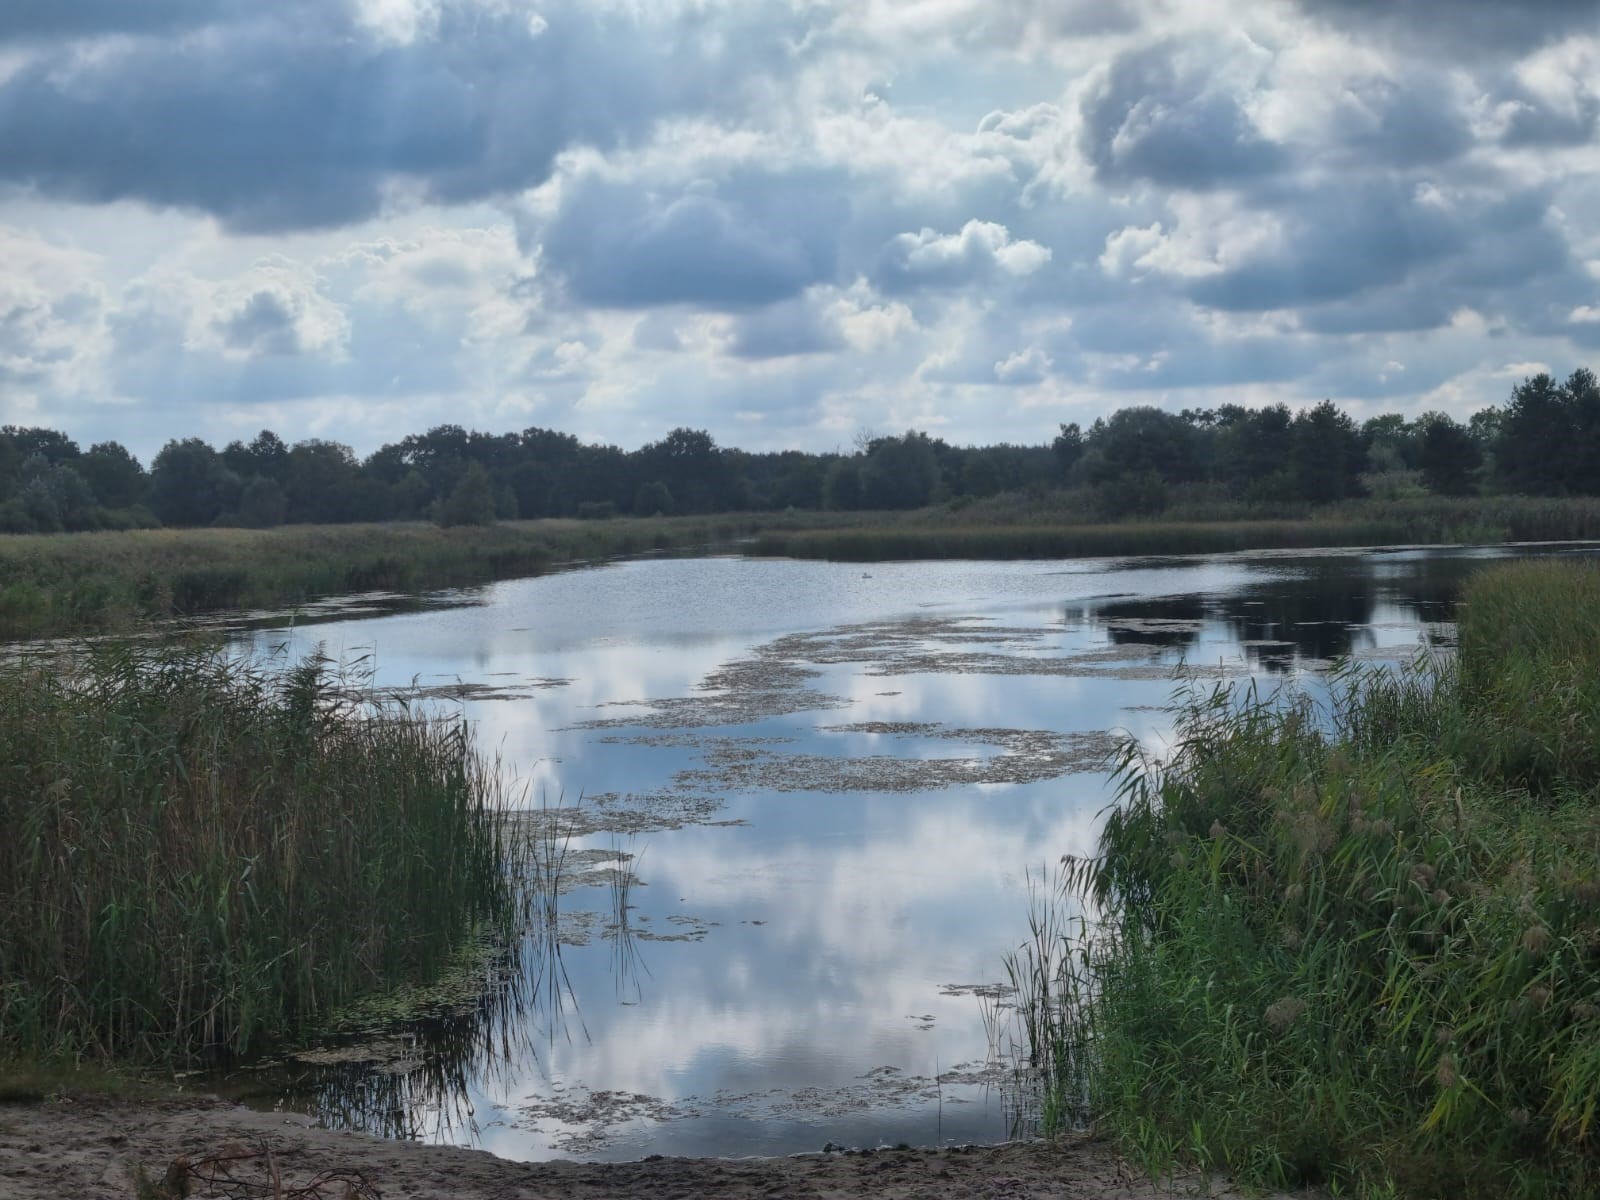 Zdjęcie przedstawia rozlewisko rzeki z brzegami porośniętymi trzcinami i lasem w tle. Fot. Archiwum RDLP w Poznaniu.